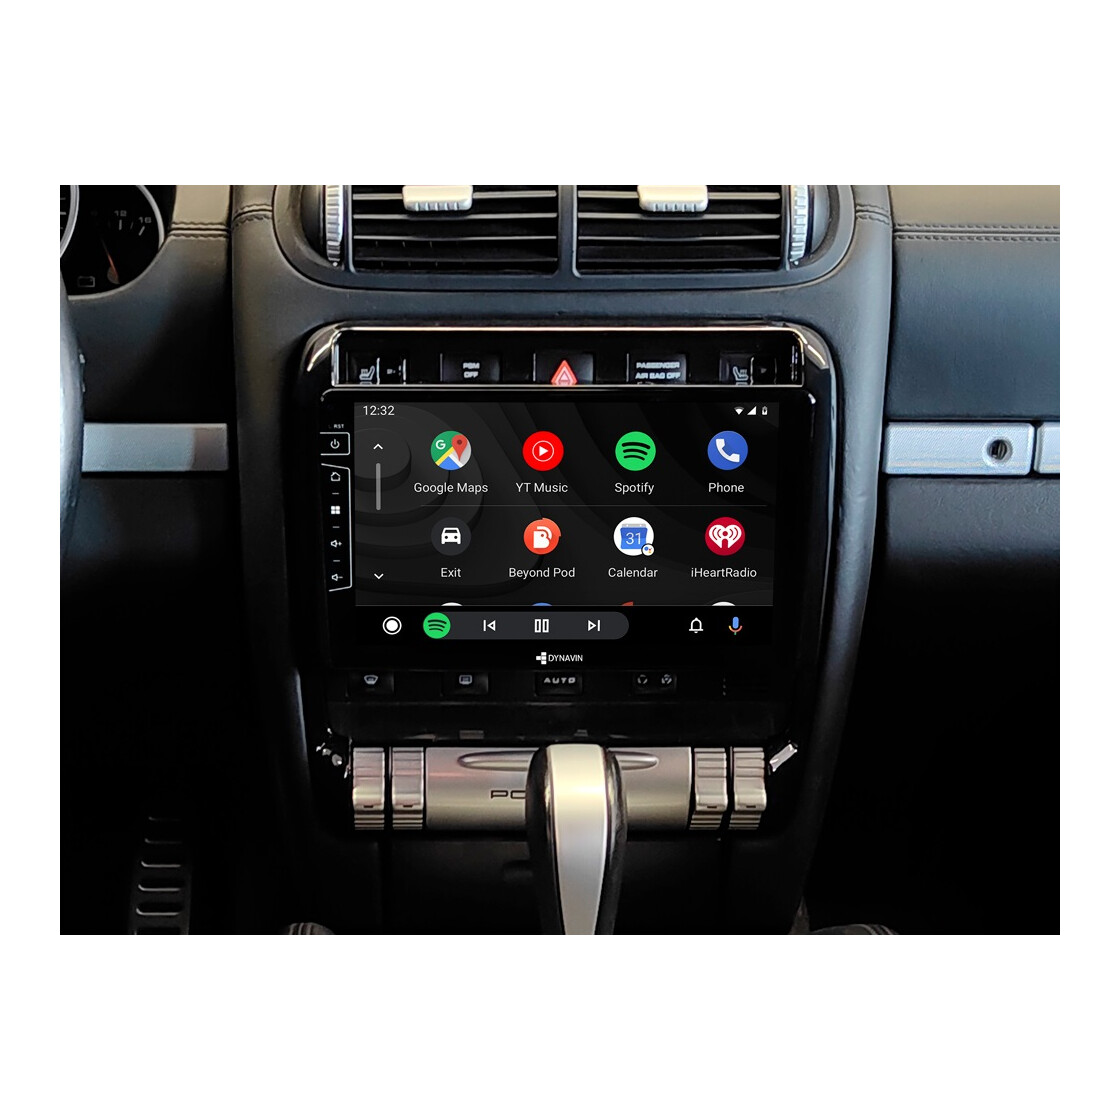 DAB + Antenne Mit USB Adapter Empfänger Android Auto Stereo Player Auto GPS  Empfänger DAB + Signal Empfänger Für Universal Von 25,22 €